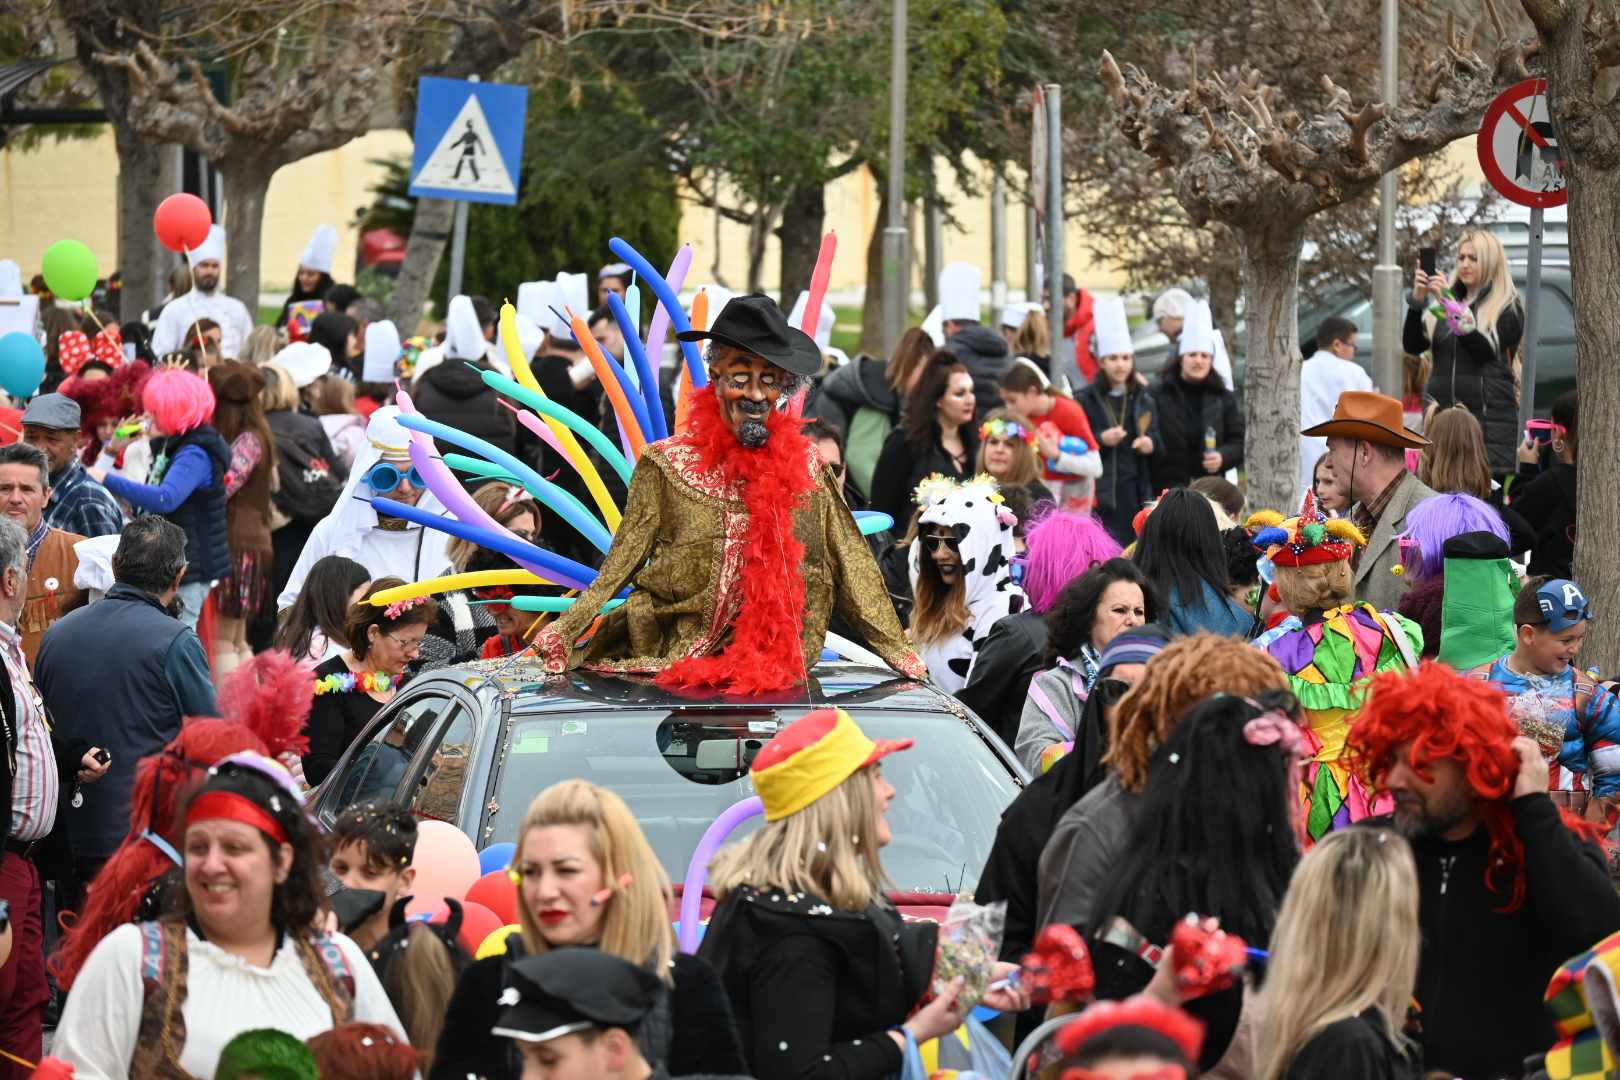 Του έδωσαν και κατάλαβε οι Αχαρνές! Ατελείωτο κέφι, χορός και τραγούδι στην Καρναβαλική παρέλαση του Δήμου (φωτο & video)